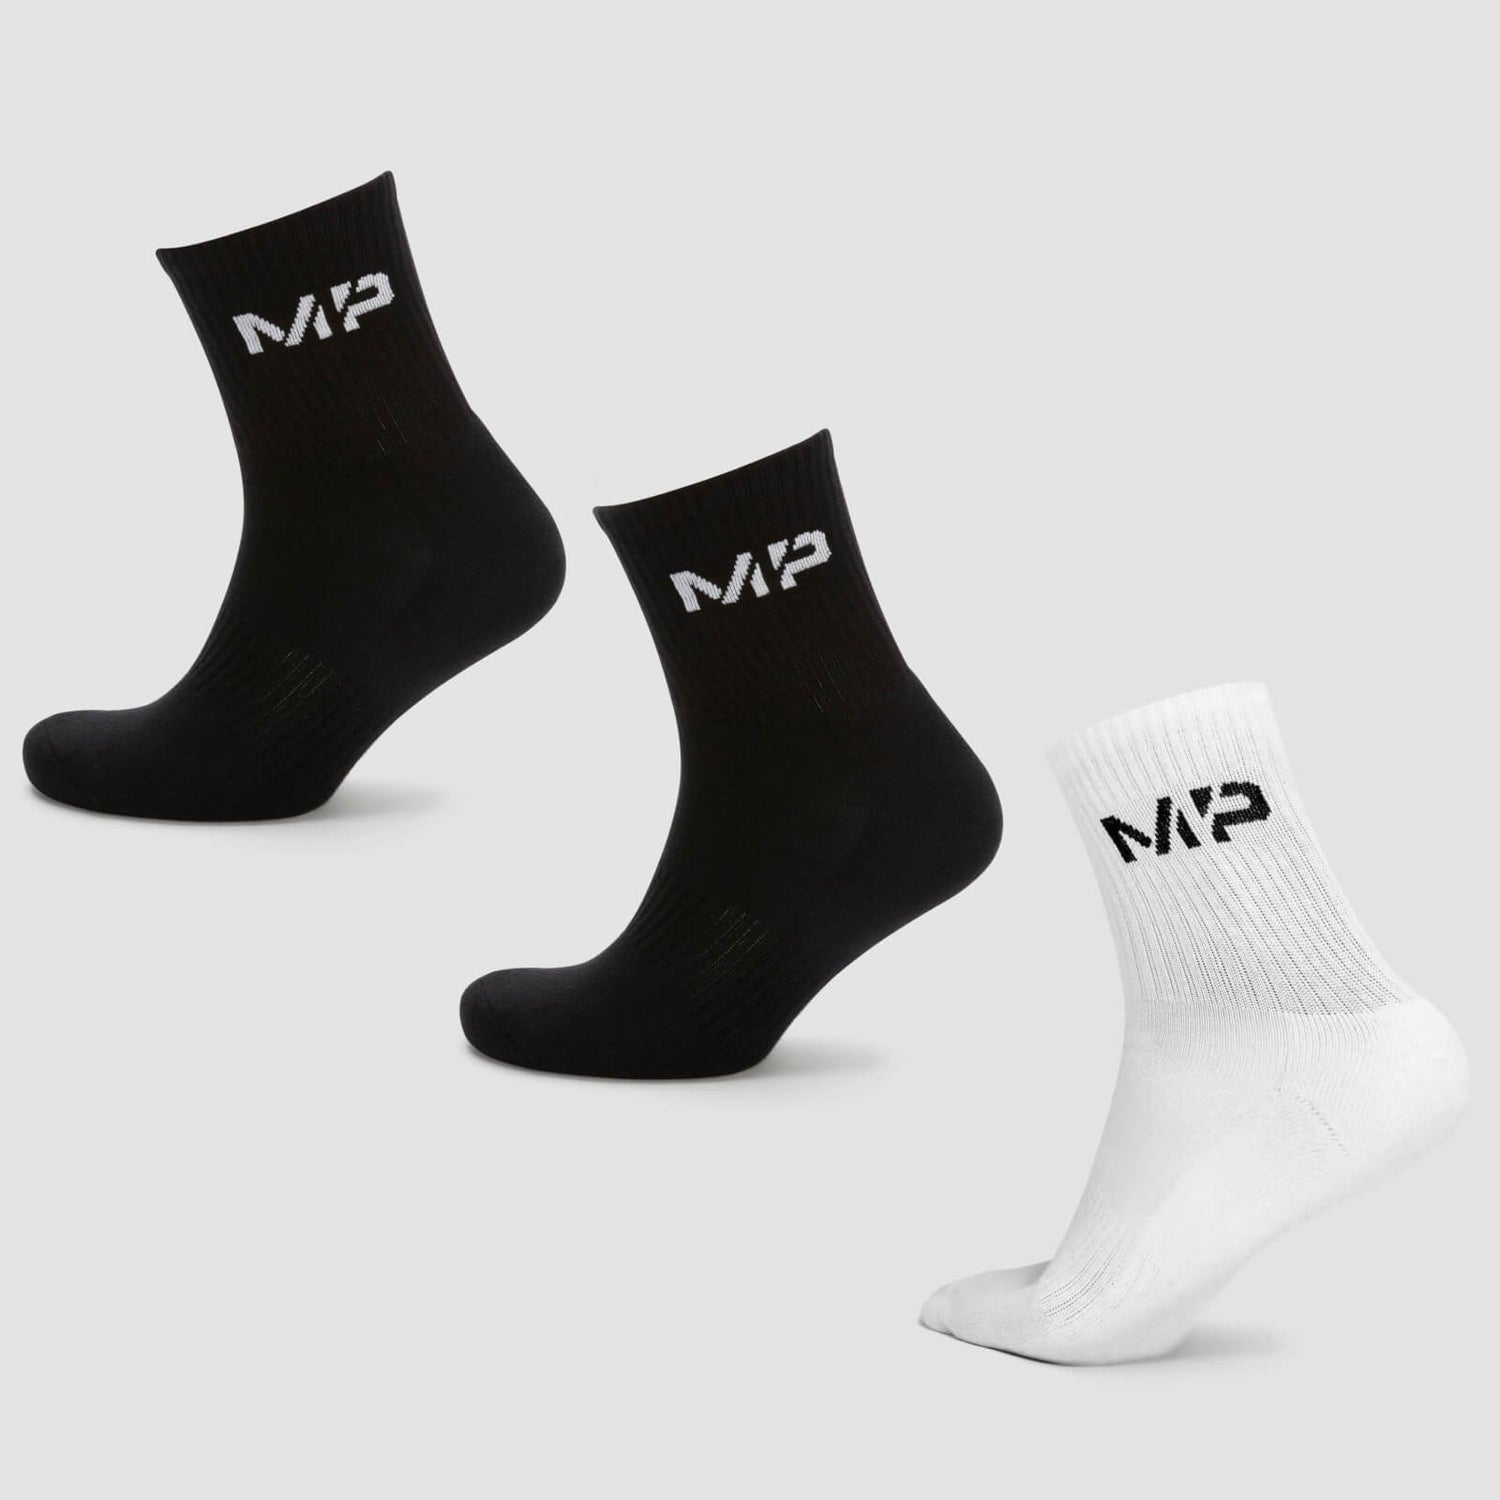 MP Women's Crew Socks (3 Pack) - Black/White